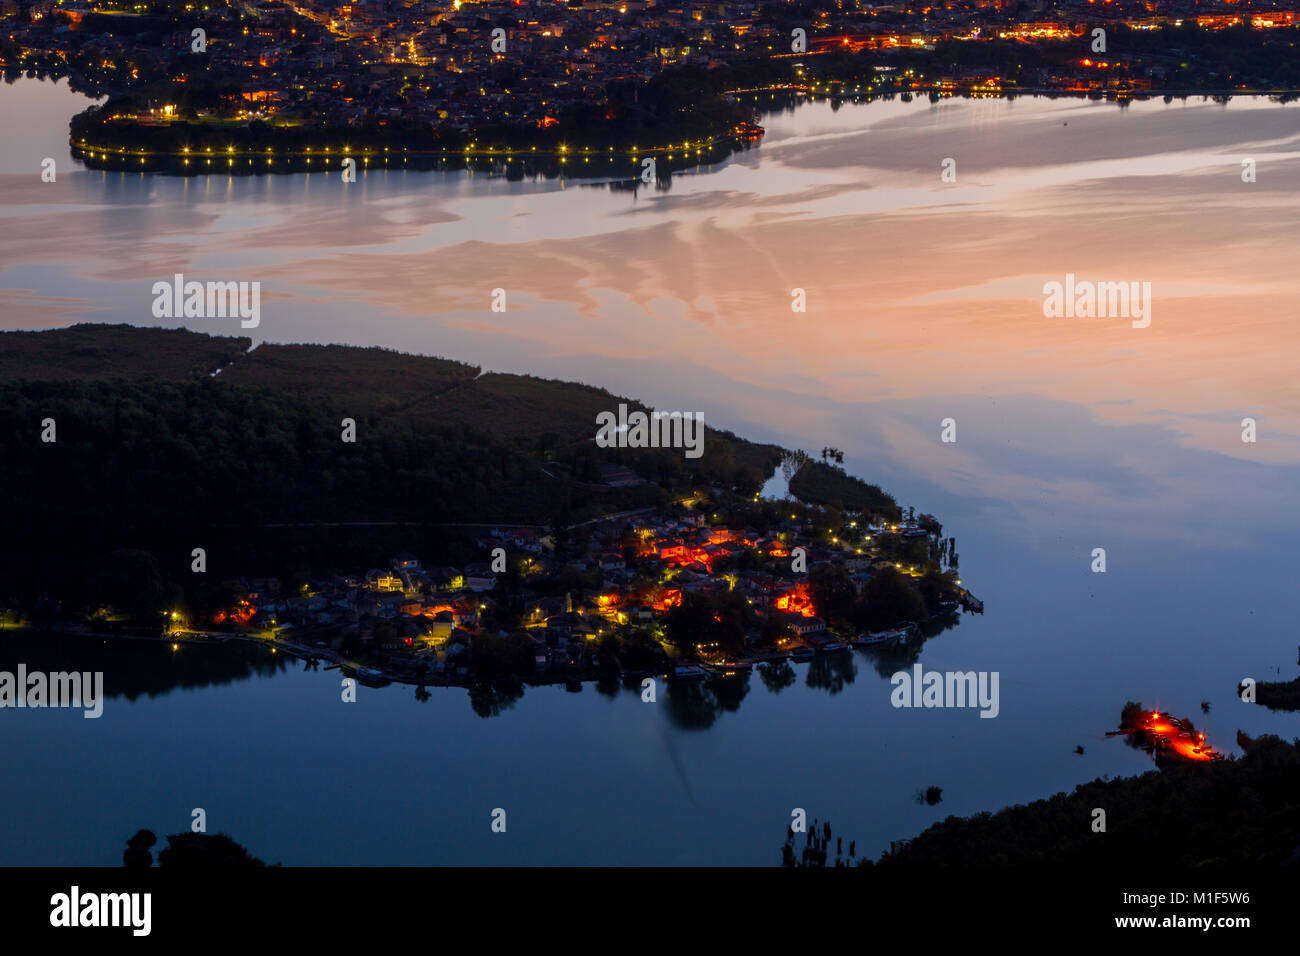 Panoramablick auf See und Ioannina Nisaki, die bewohnte Insel in der Mitte des Sees, in der Region Epirus, Griechenland. Stockfoto